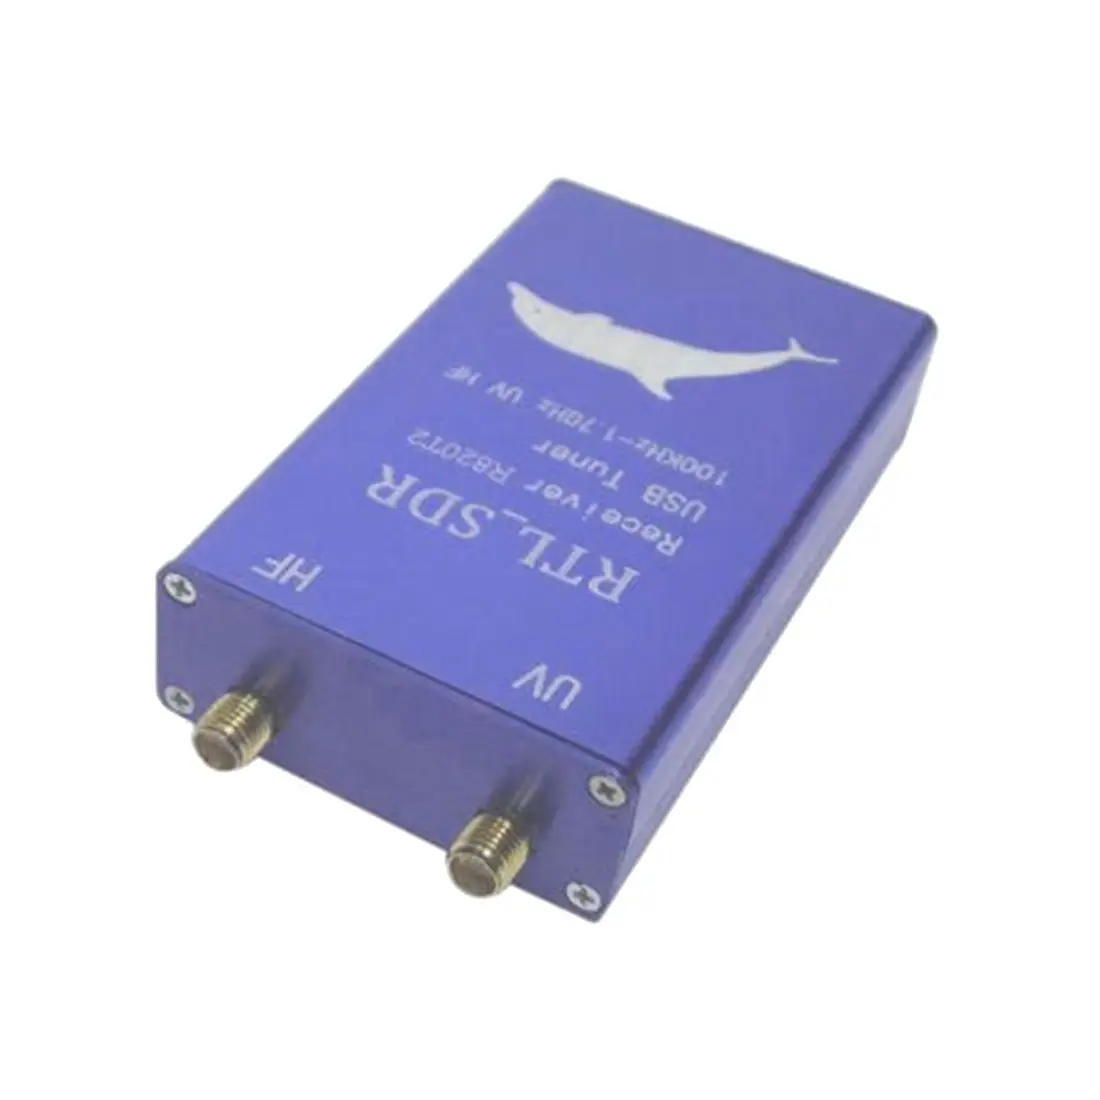 RTL2832U+ R820T2 100 кГц-1,7 ГГц UHF VHF RTL. SDR USB тюнер приемник AM, FM радио